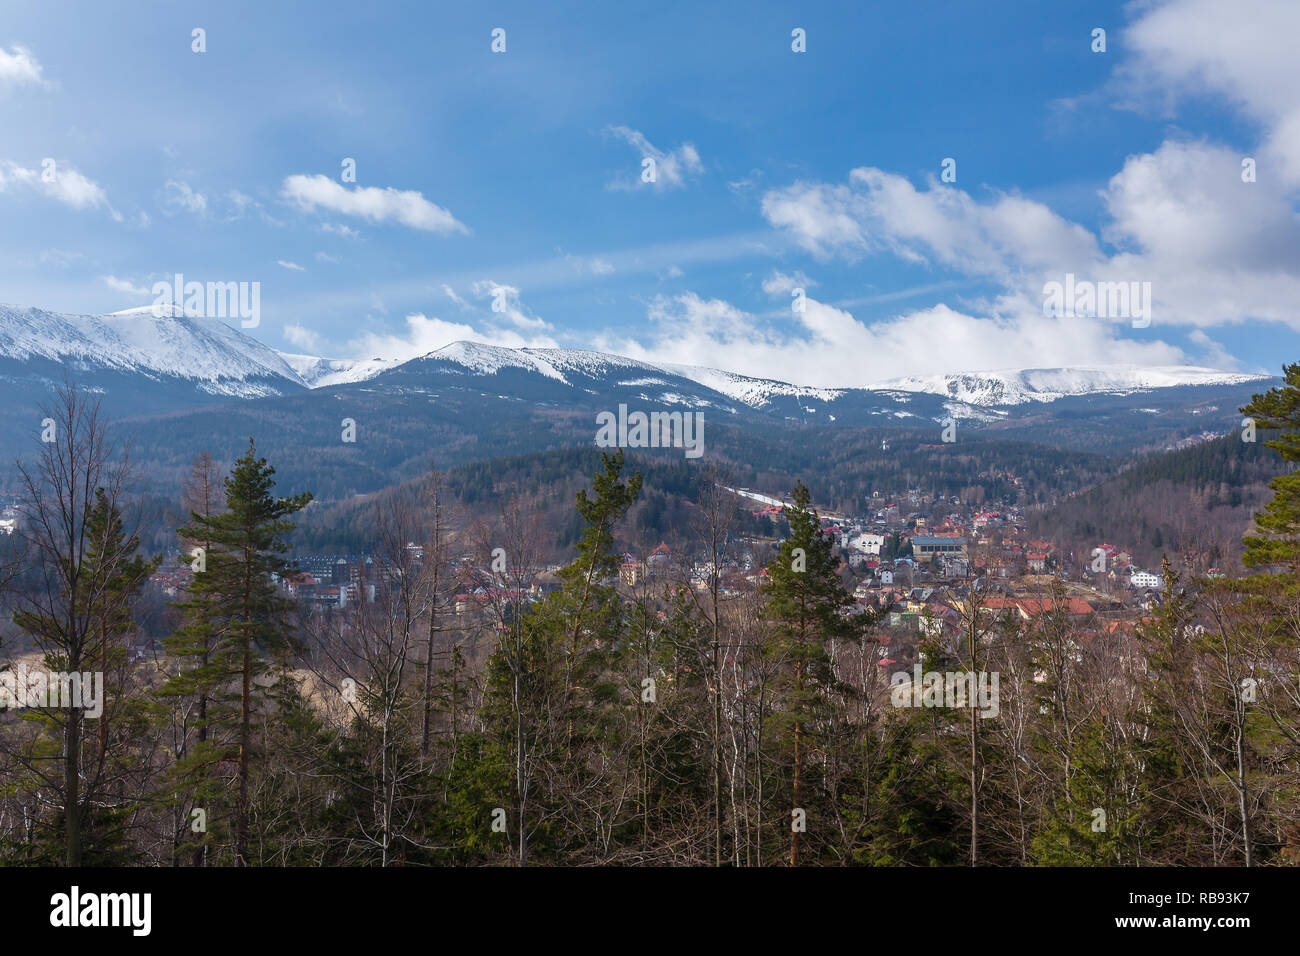 Karkonosze mountains and Karpacz city in Poland Stock Photo